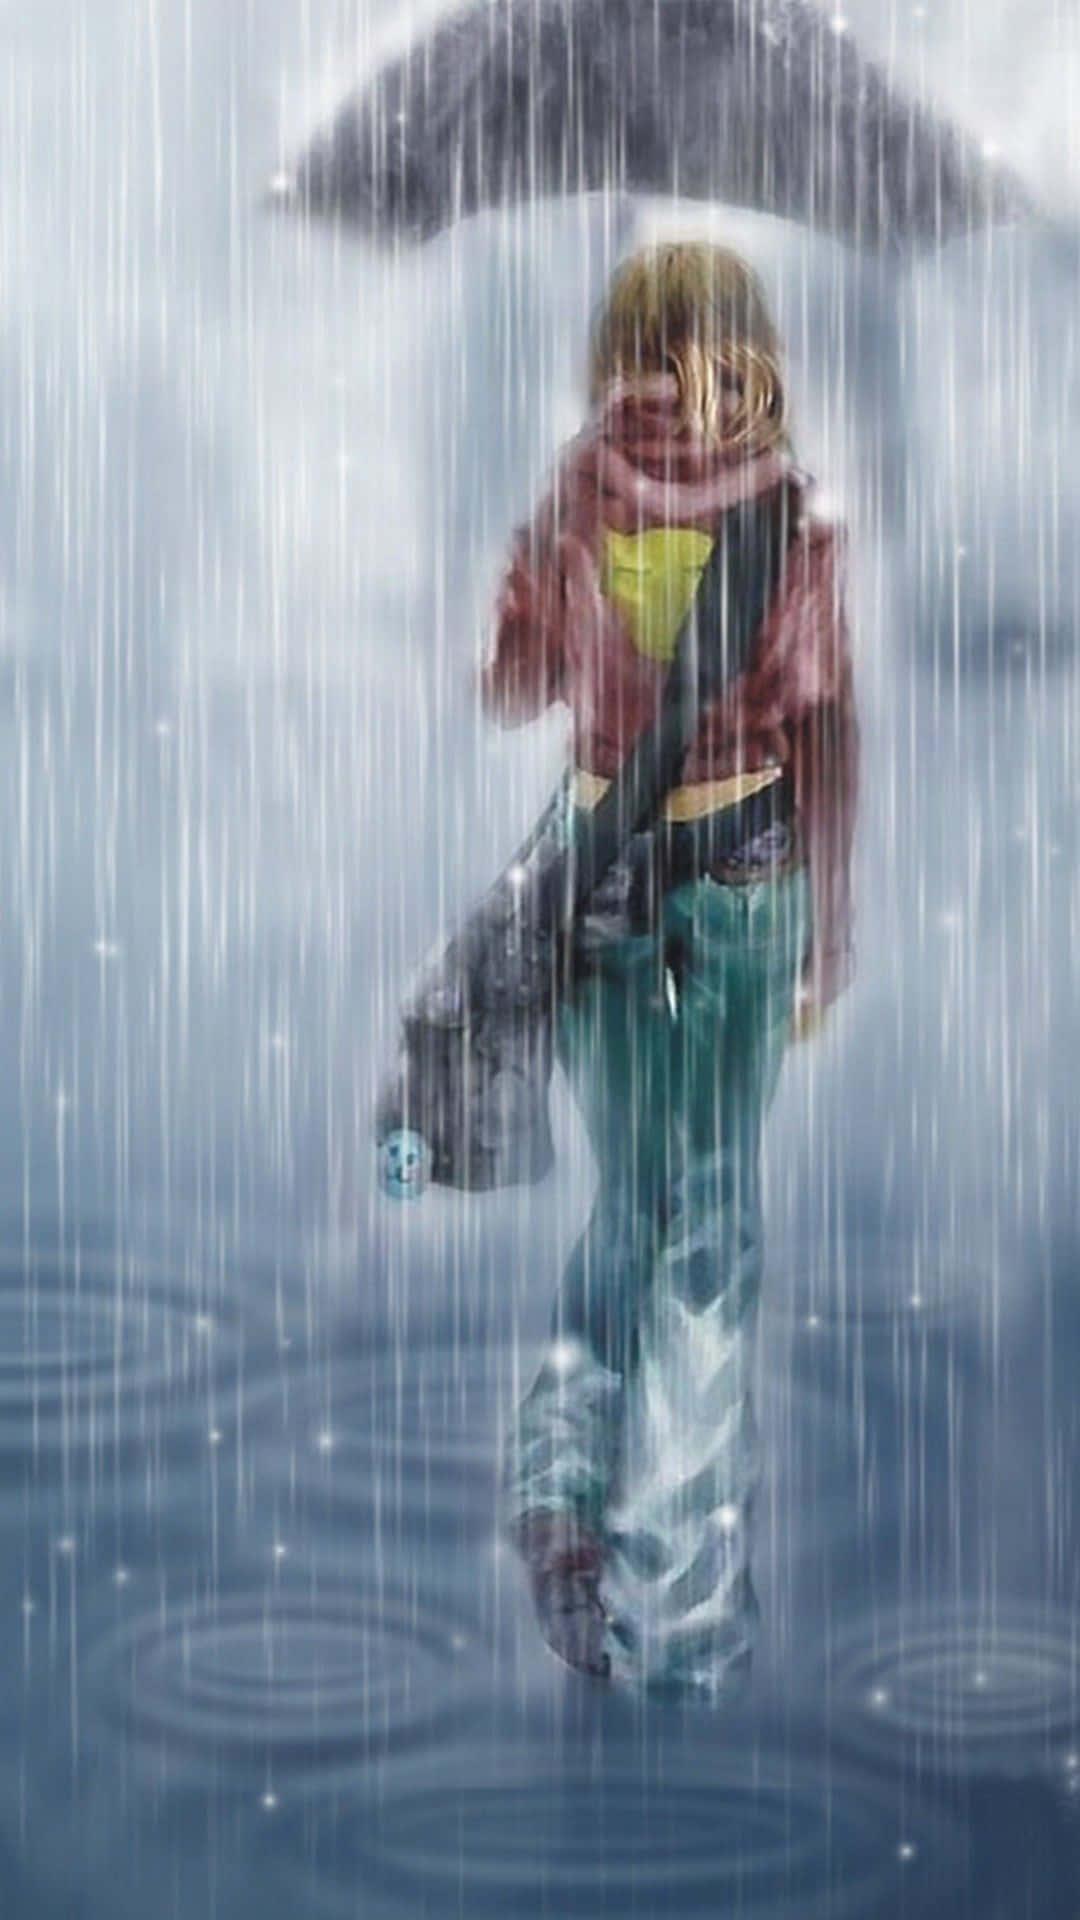 Wallpaper - Danse i regnen med denne quirky anime-karakter tapet Wallpaper